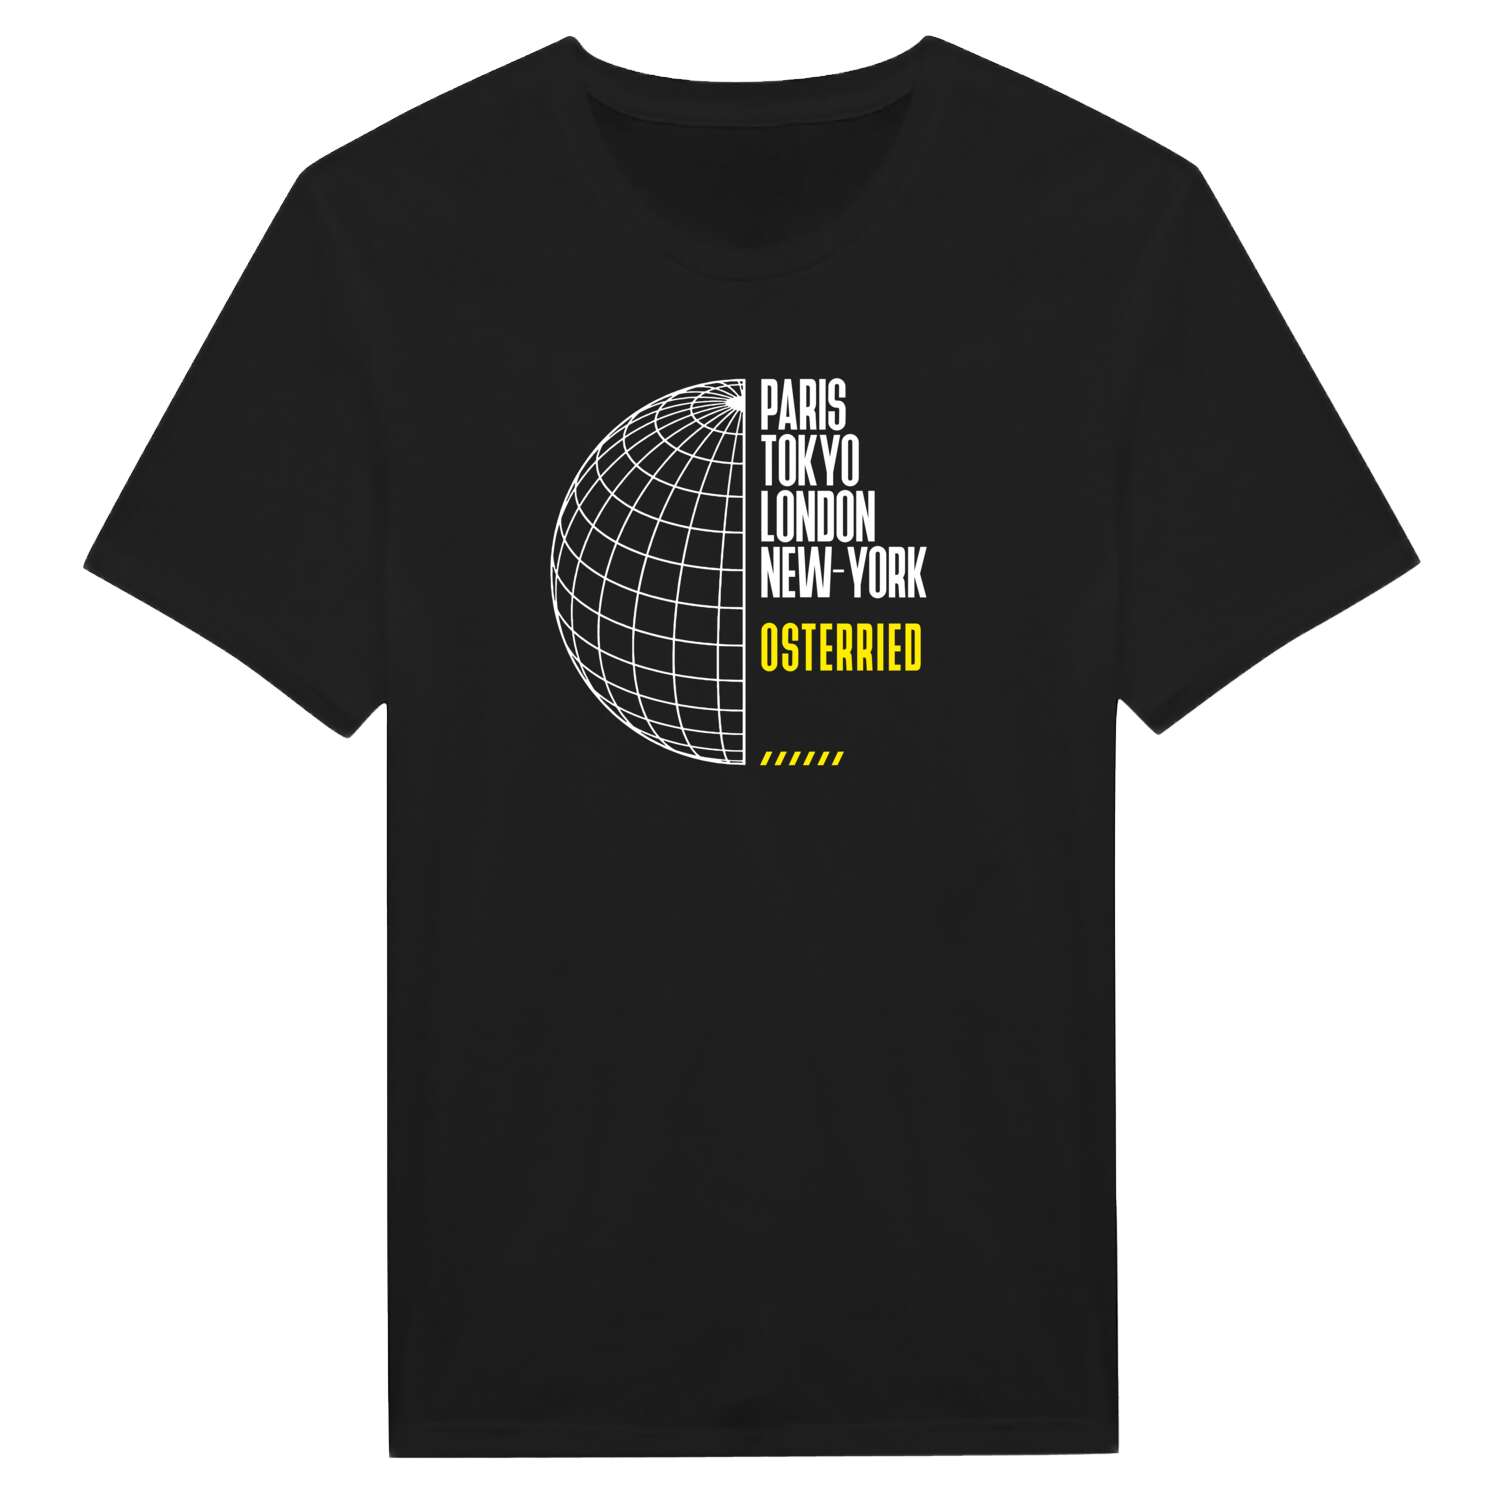 Osterried T-Shirt »Paris Tokyo London«